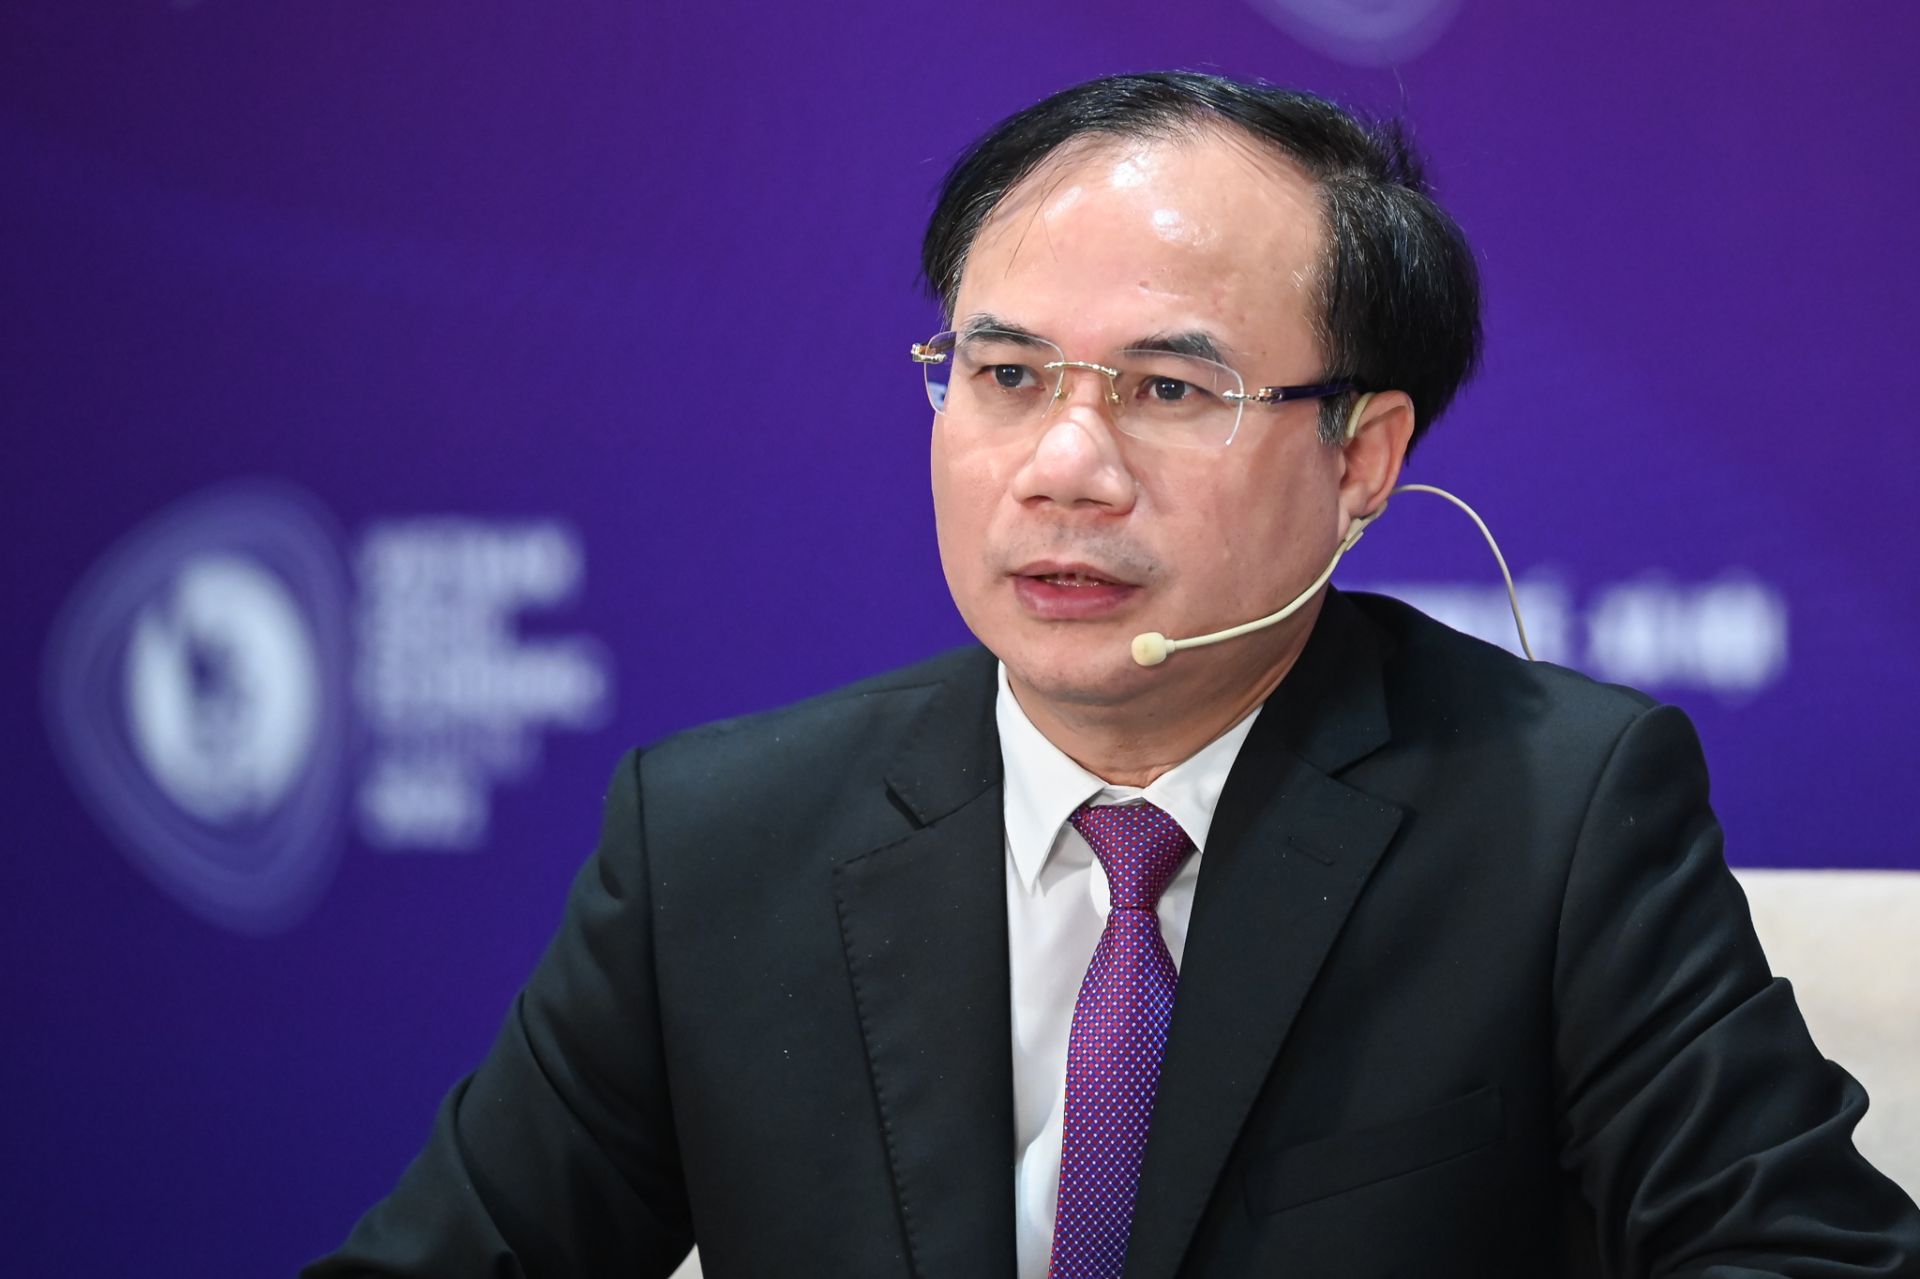 Thứ trưởng Bộ Xây dựng Nguyễn Văn Sinh